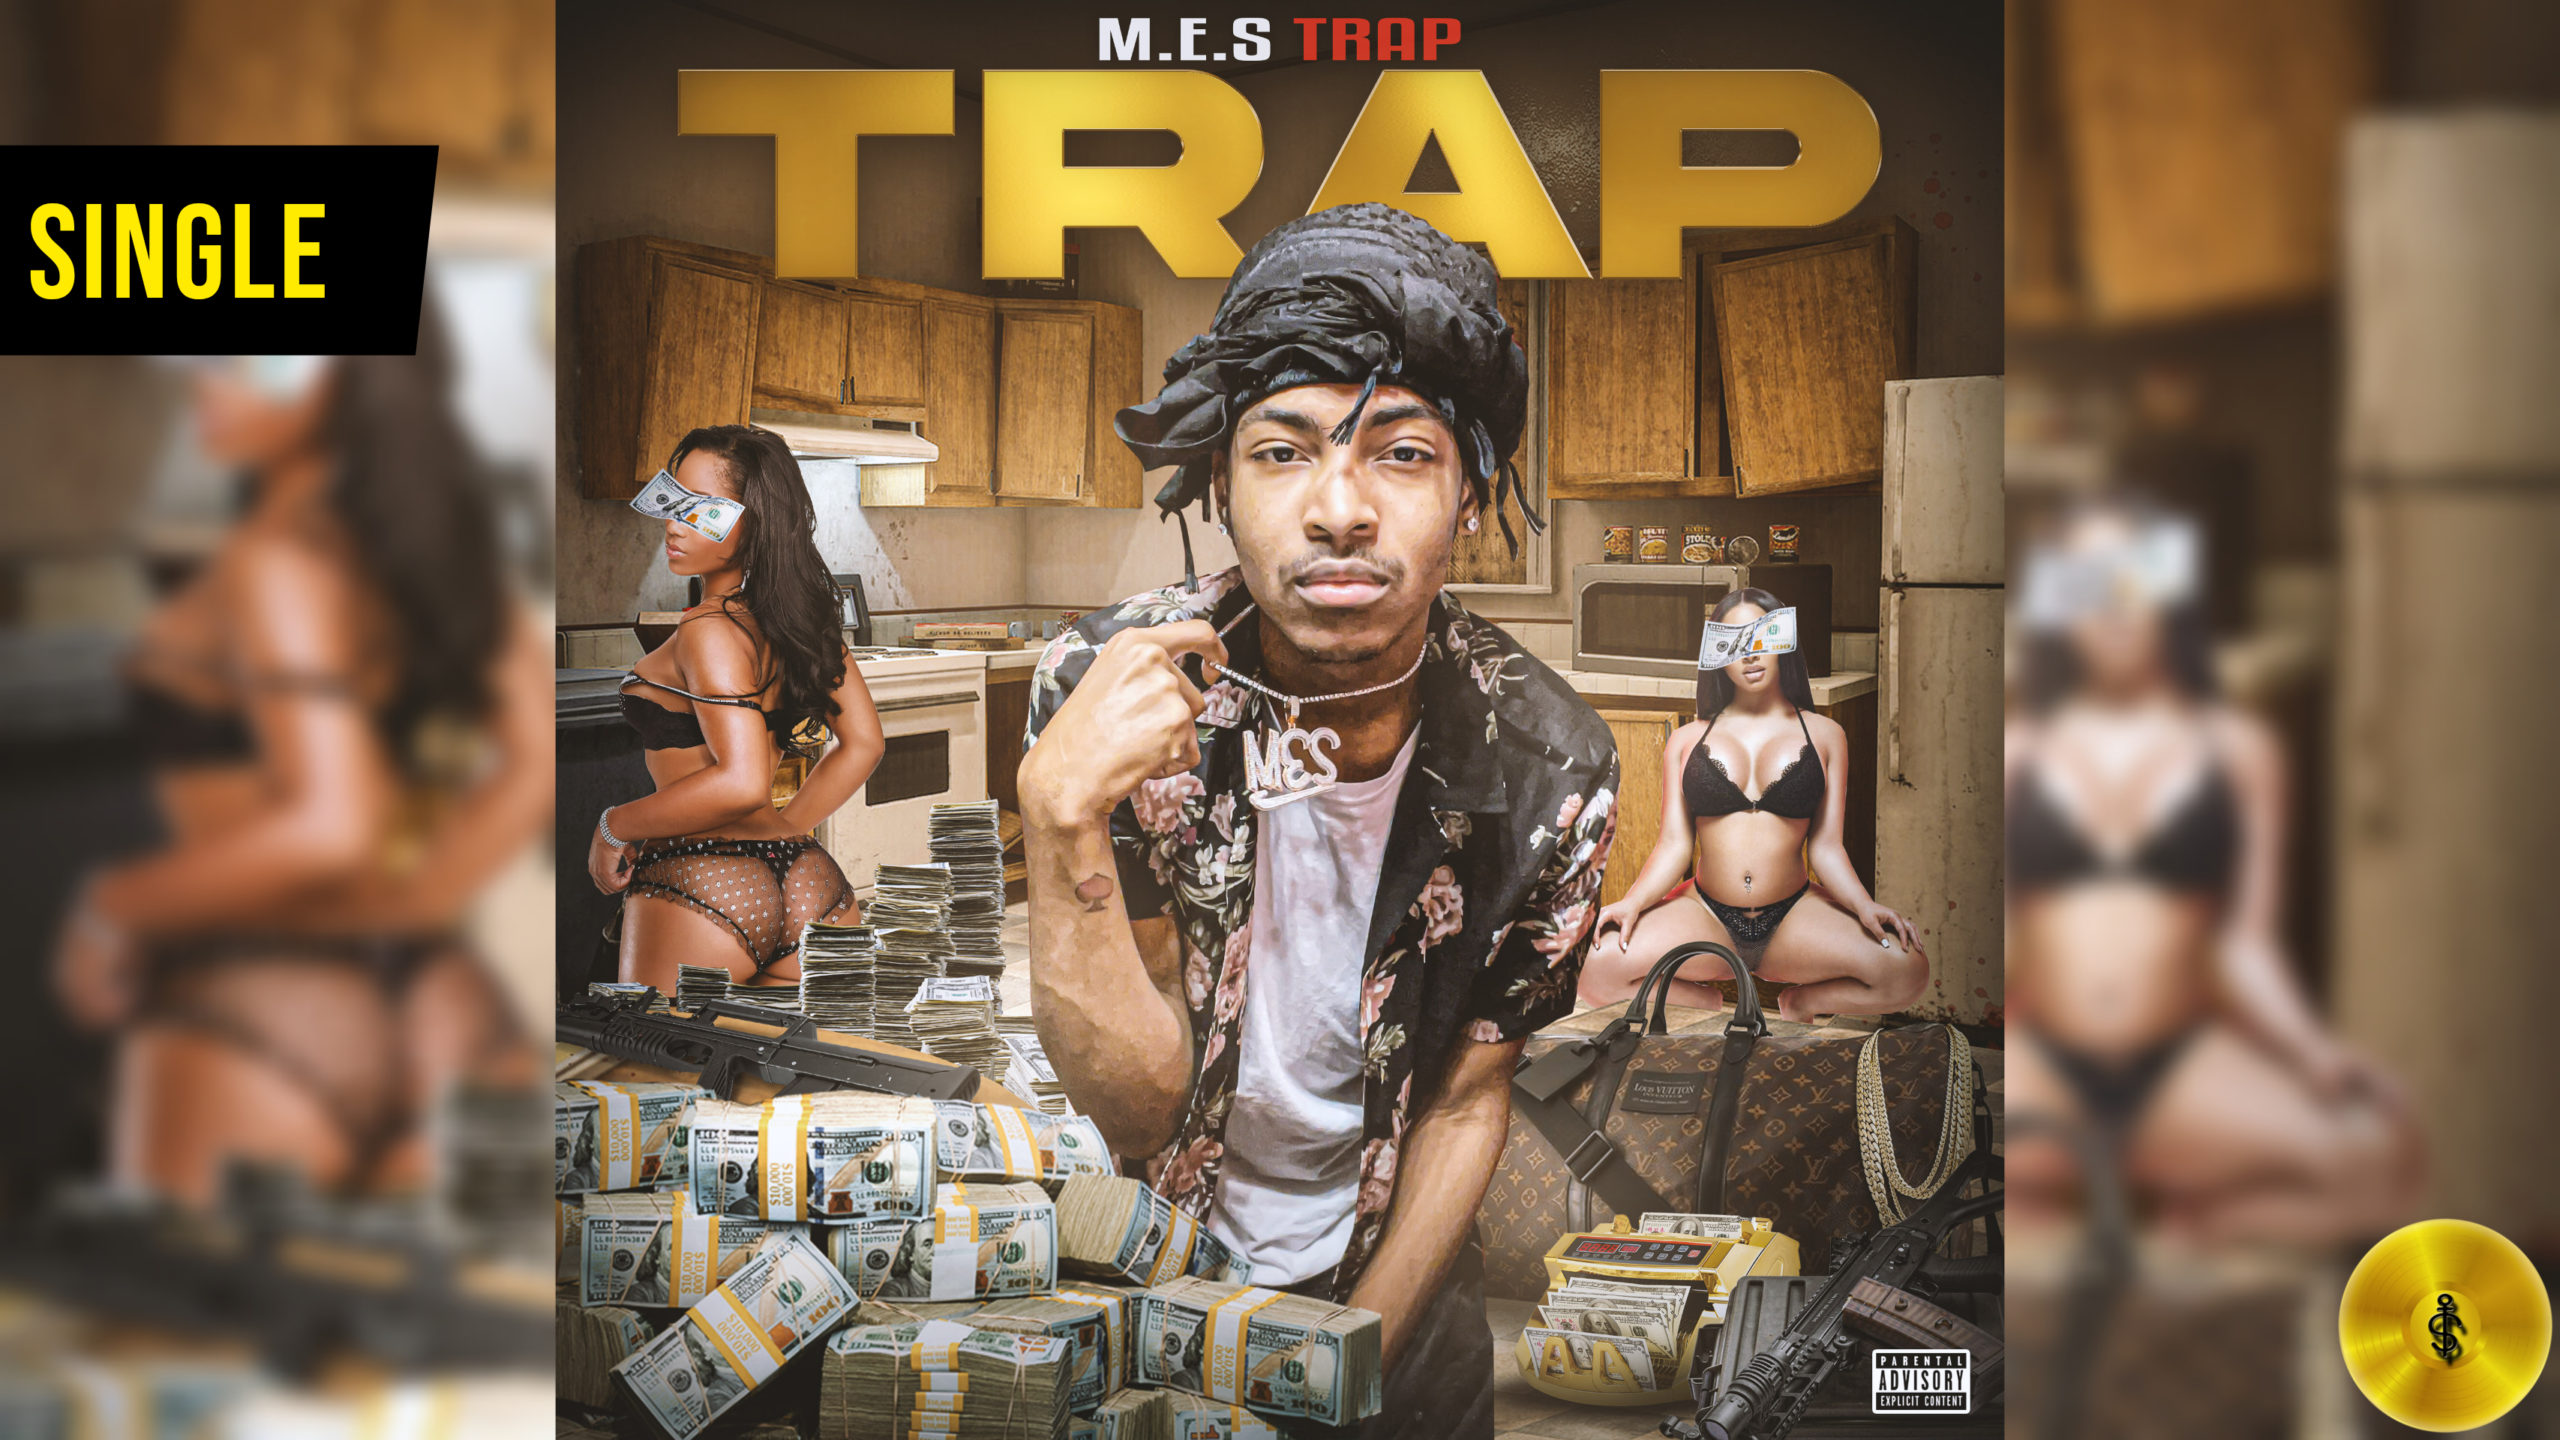 M.E.S Trap Adds To Tradition w/ “Trap” Single